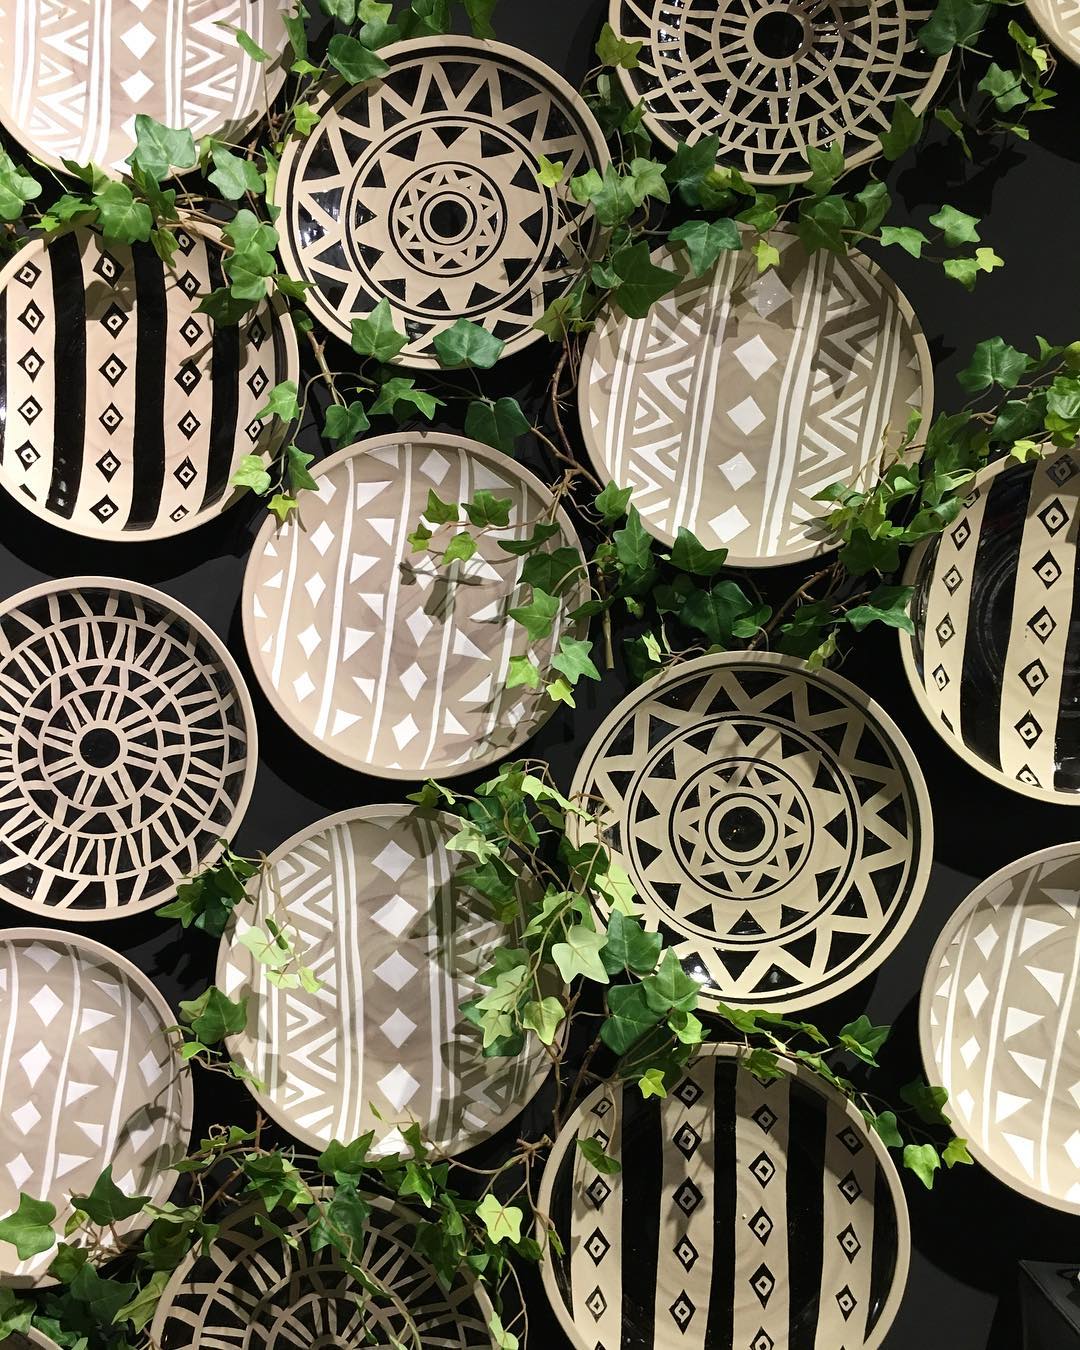 тарелки сервировка посуда в этническом стиле с орнаментами узорами фото